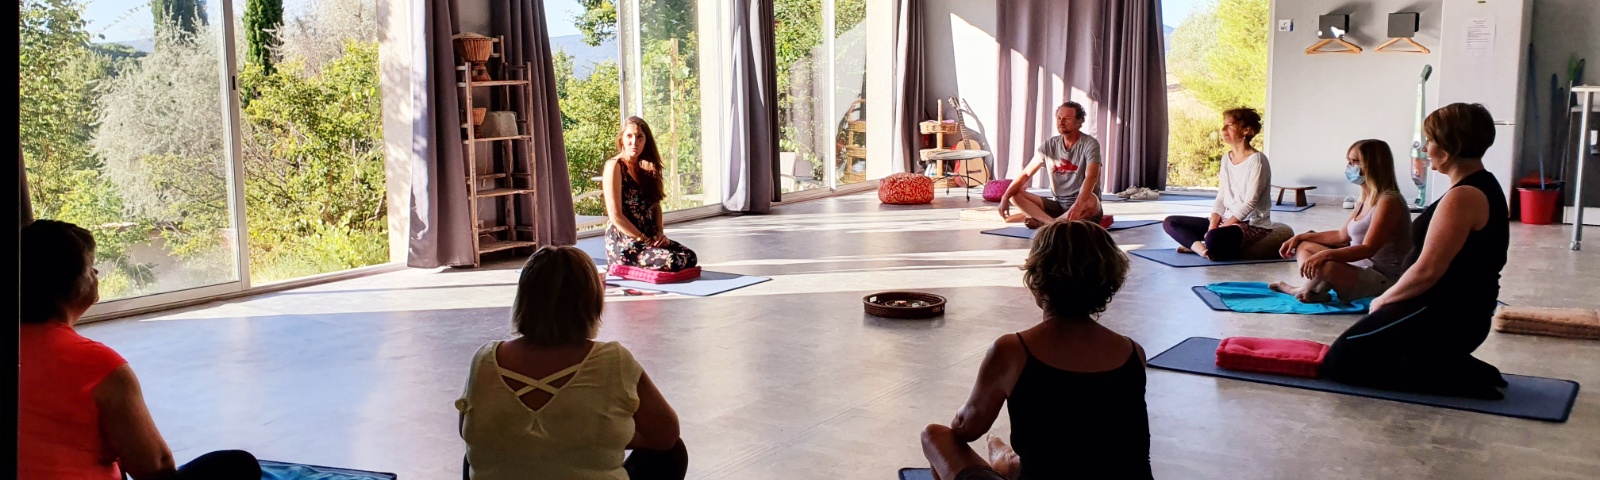 salle méditation yoga